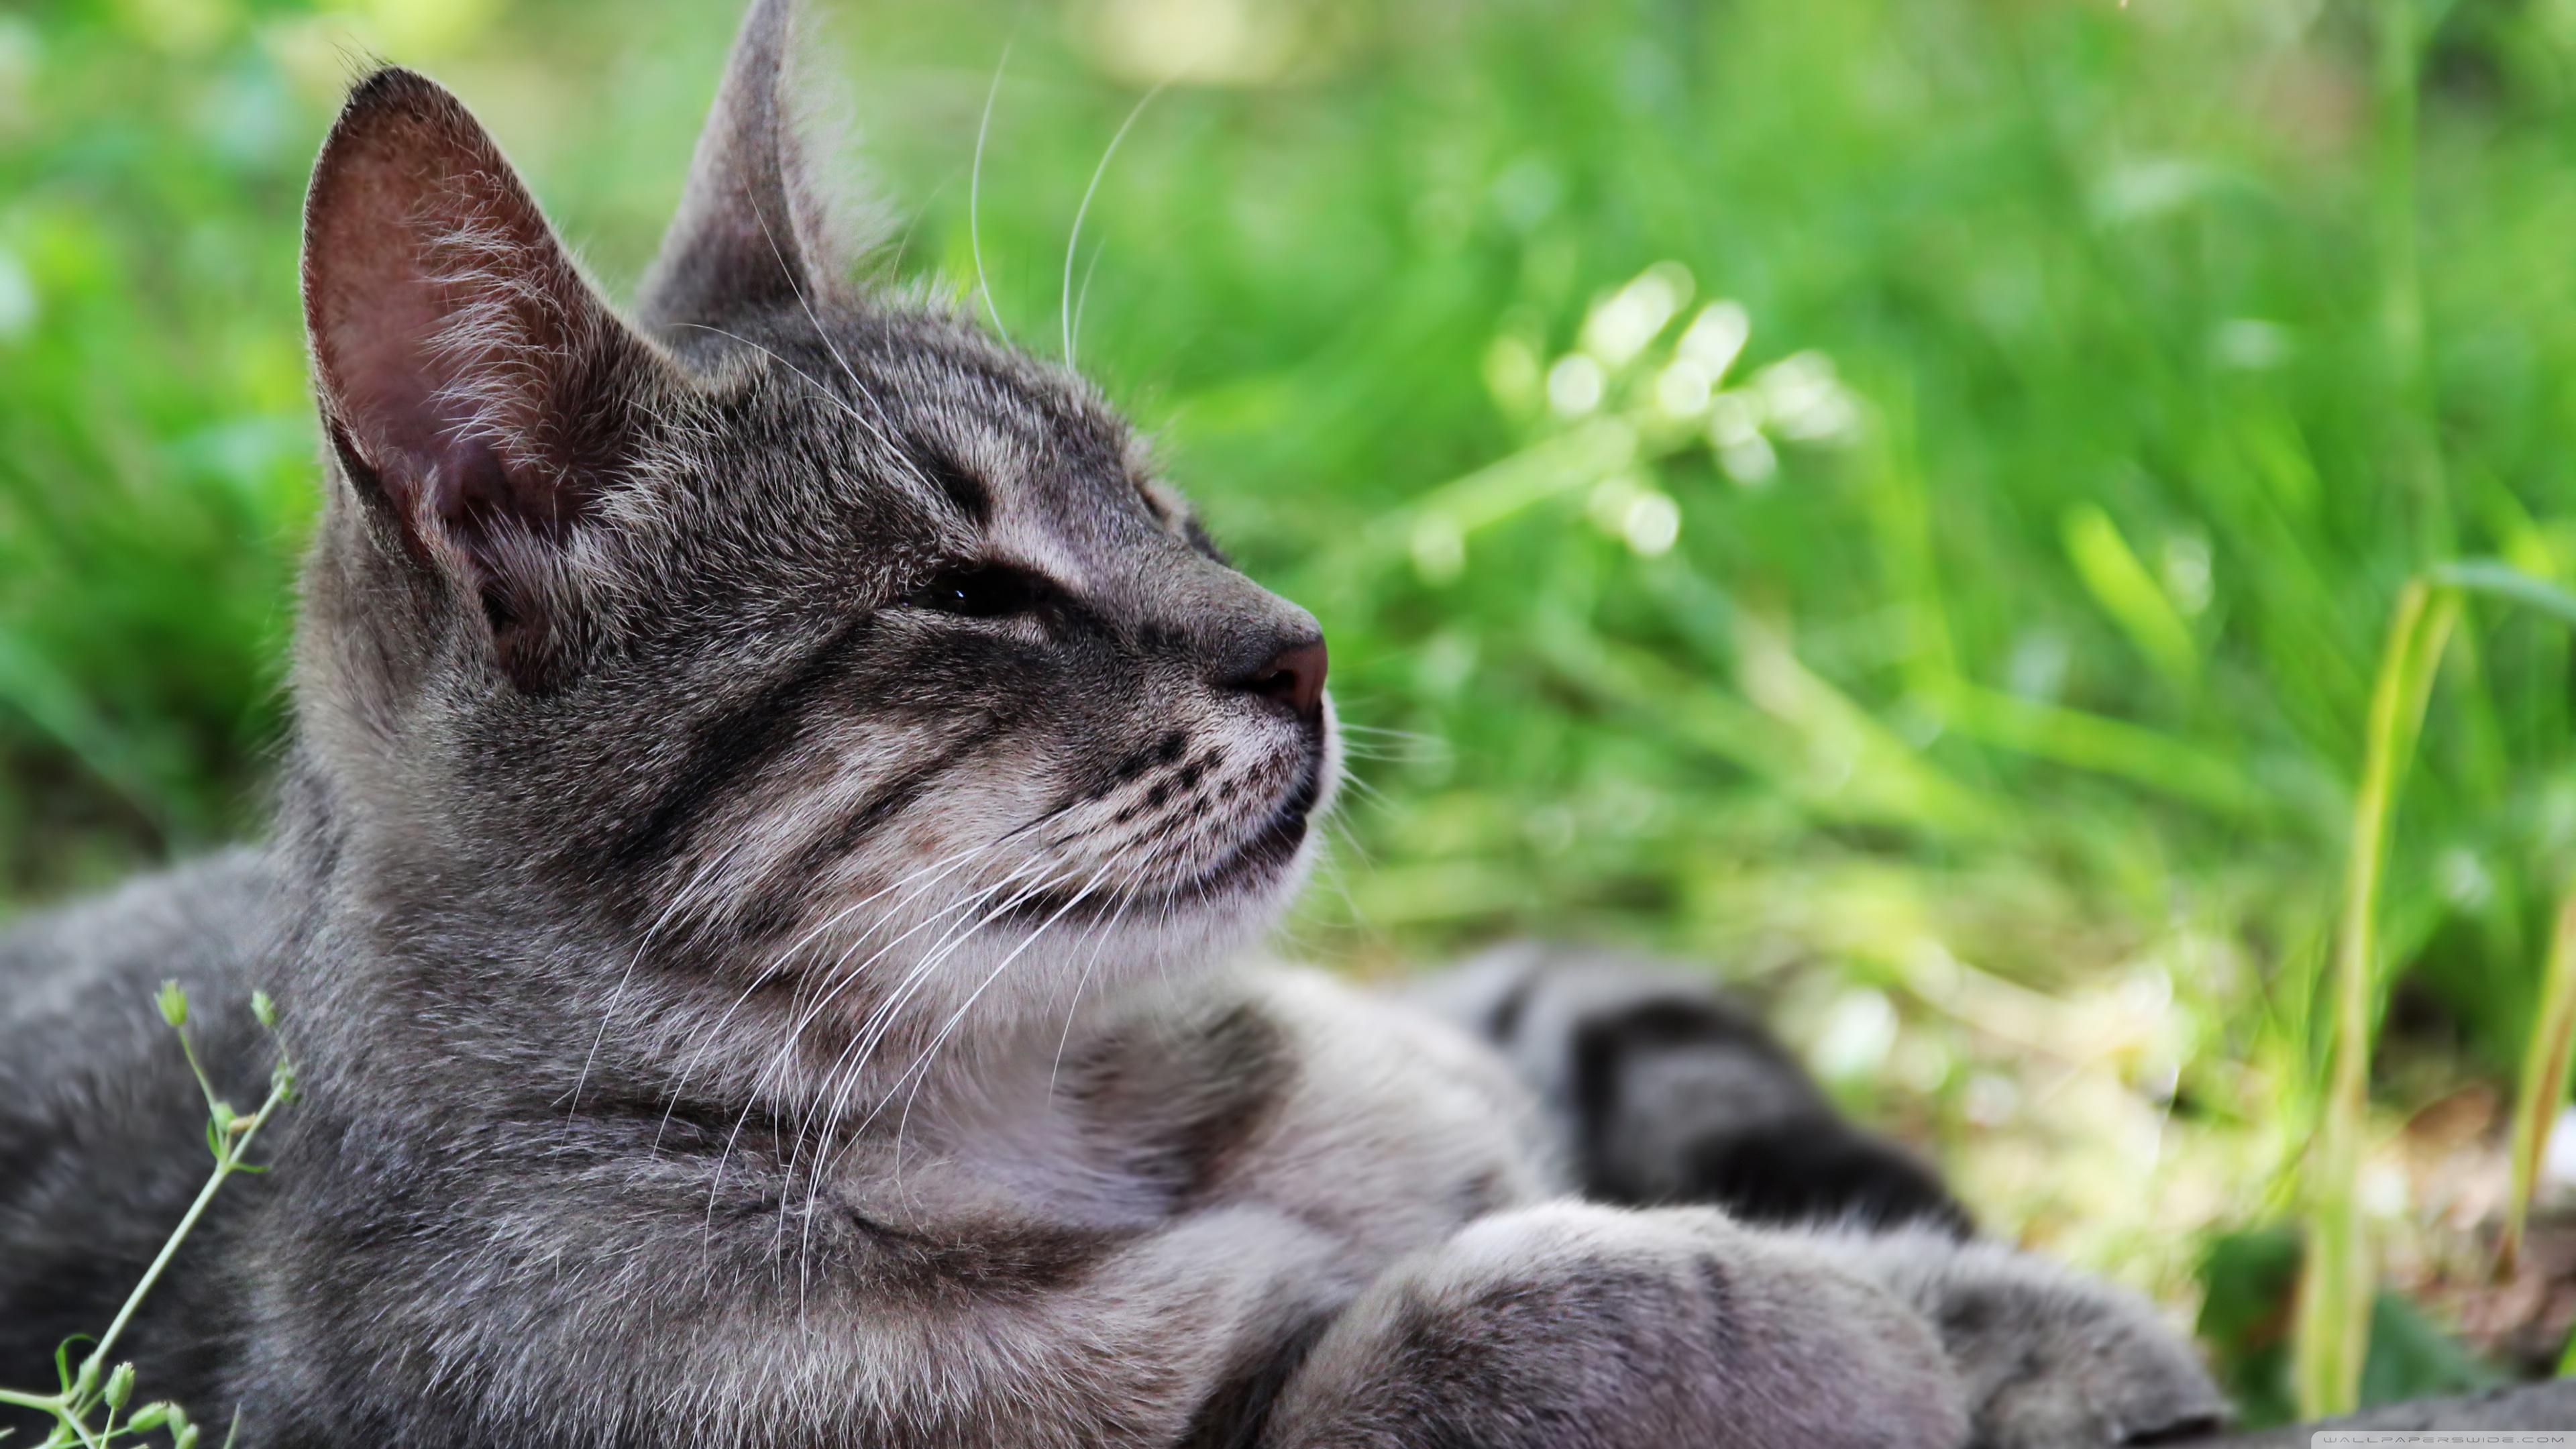 Descarga gratuita de fondo de pantalla para móvil de Animales, Gatos, Gato.